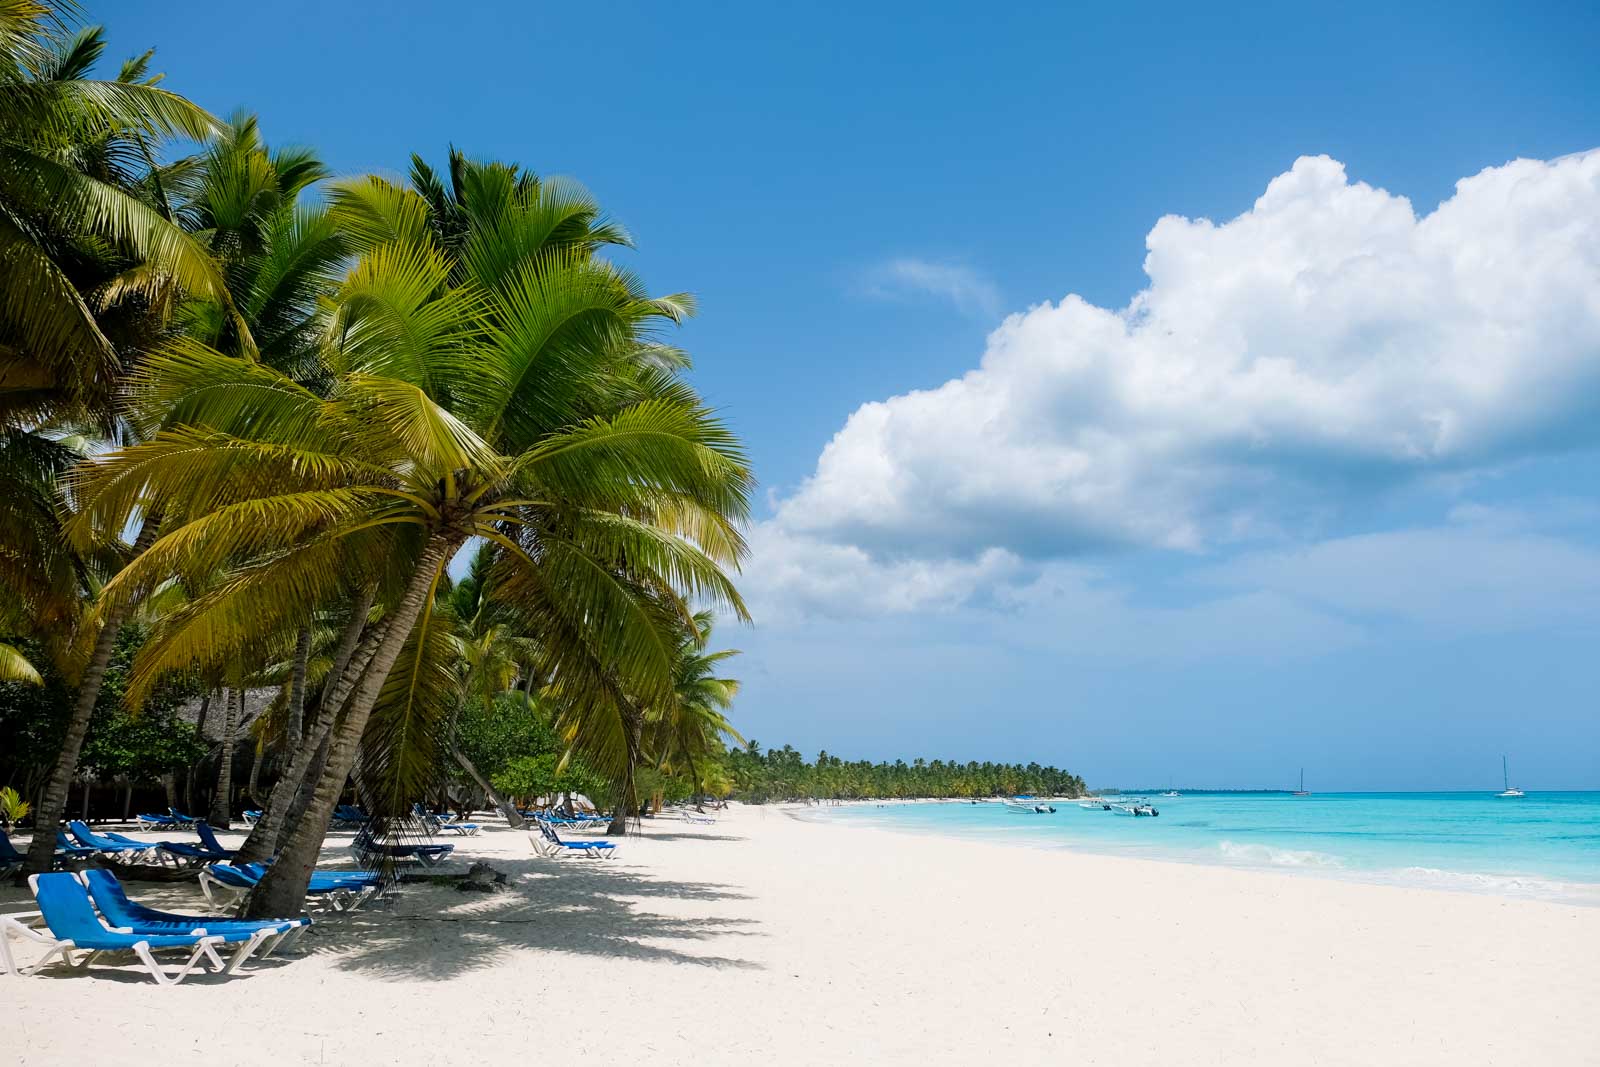 8 hely, amit nem szabad kihagyni Punta Canában, Dominikai Köztársaságban